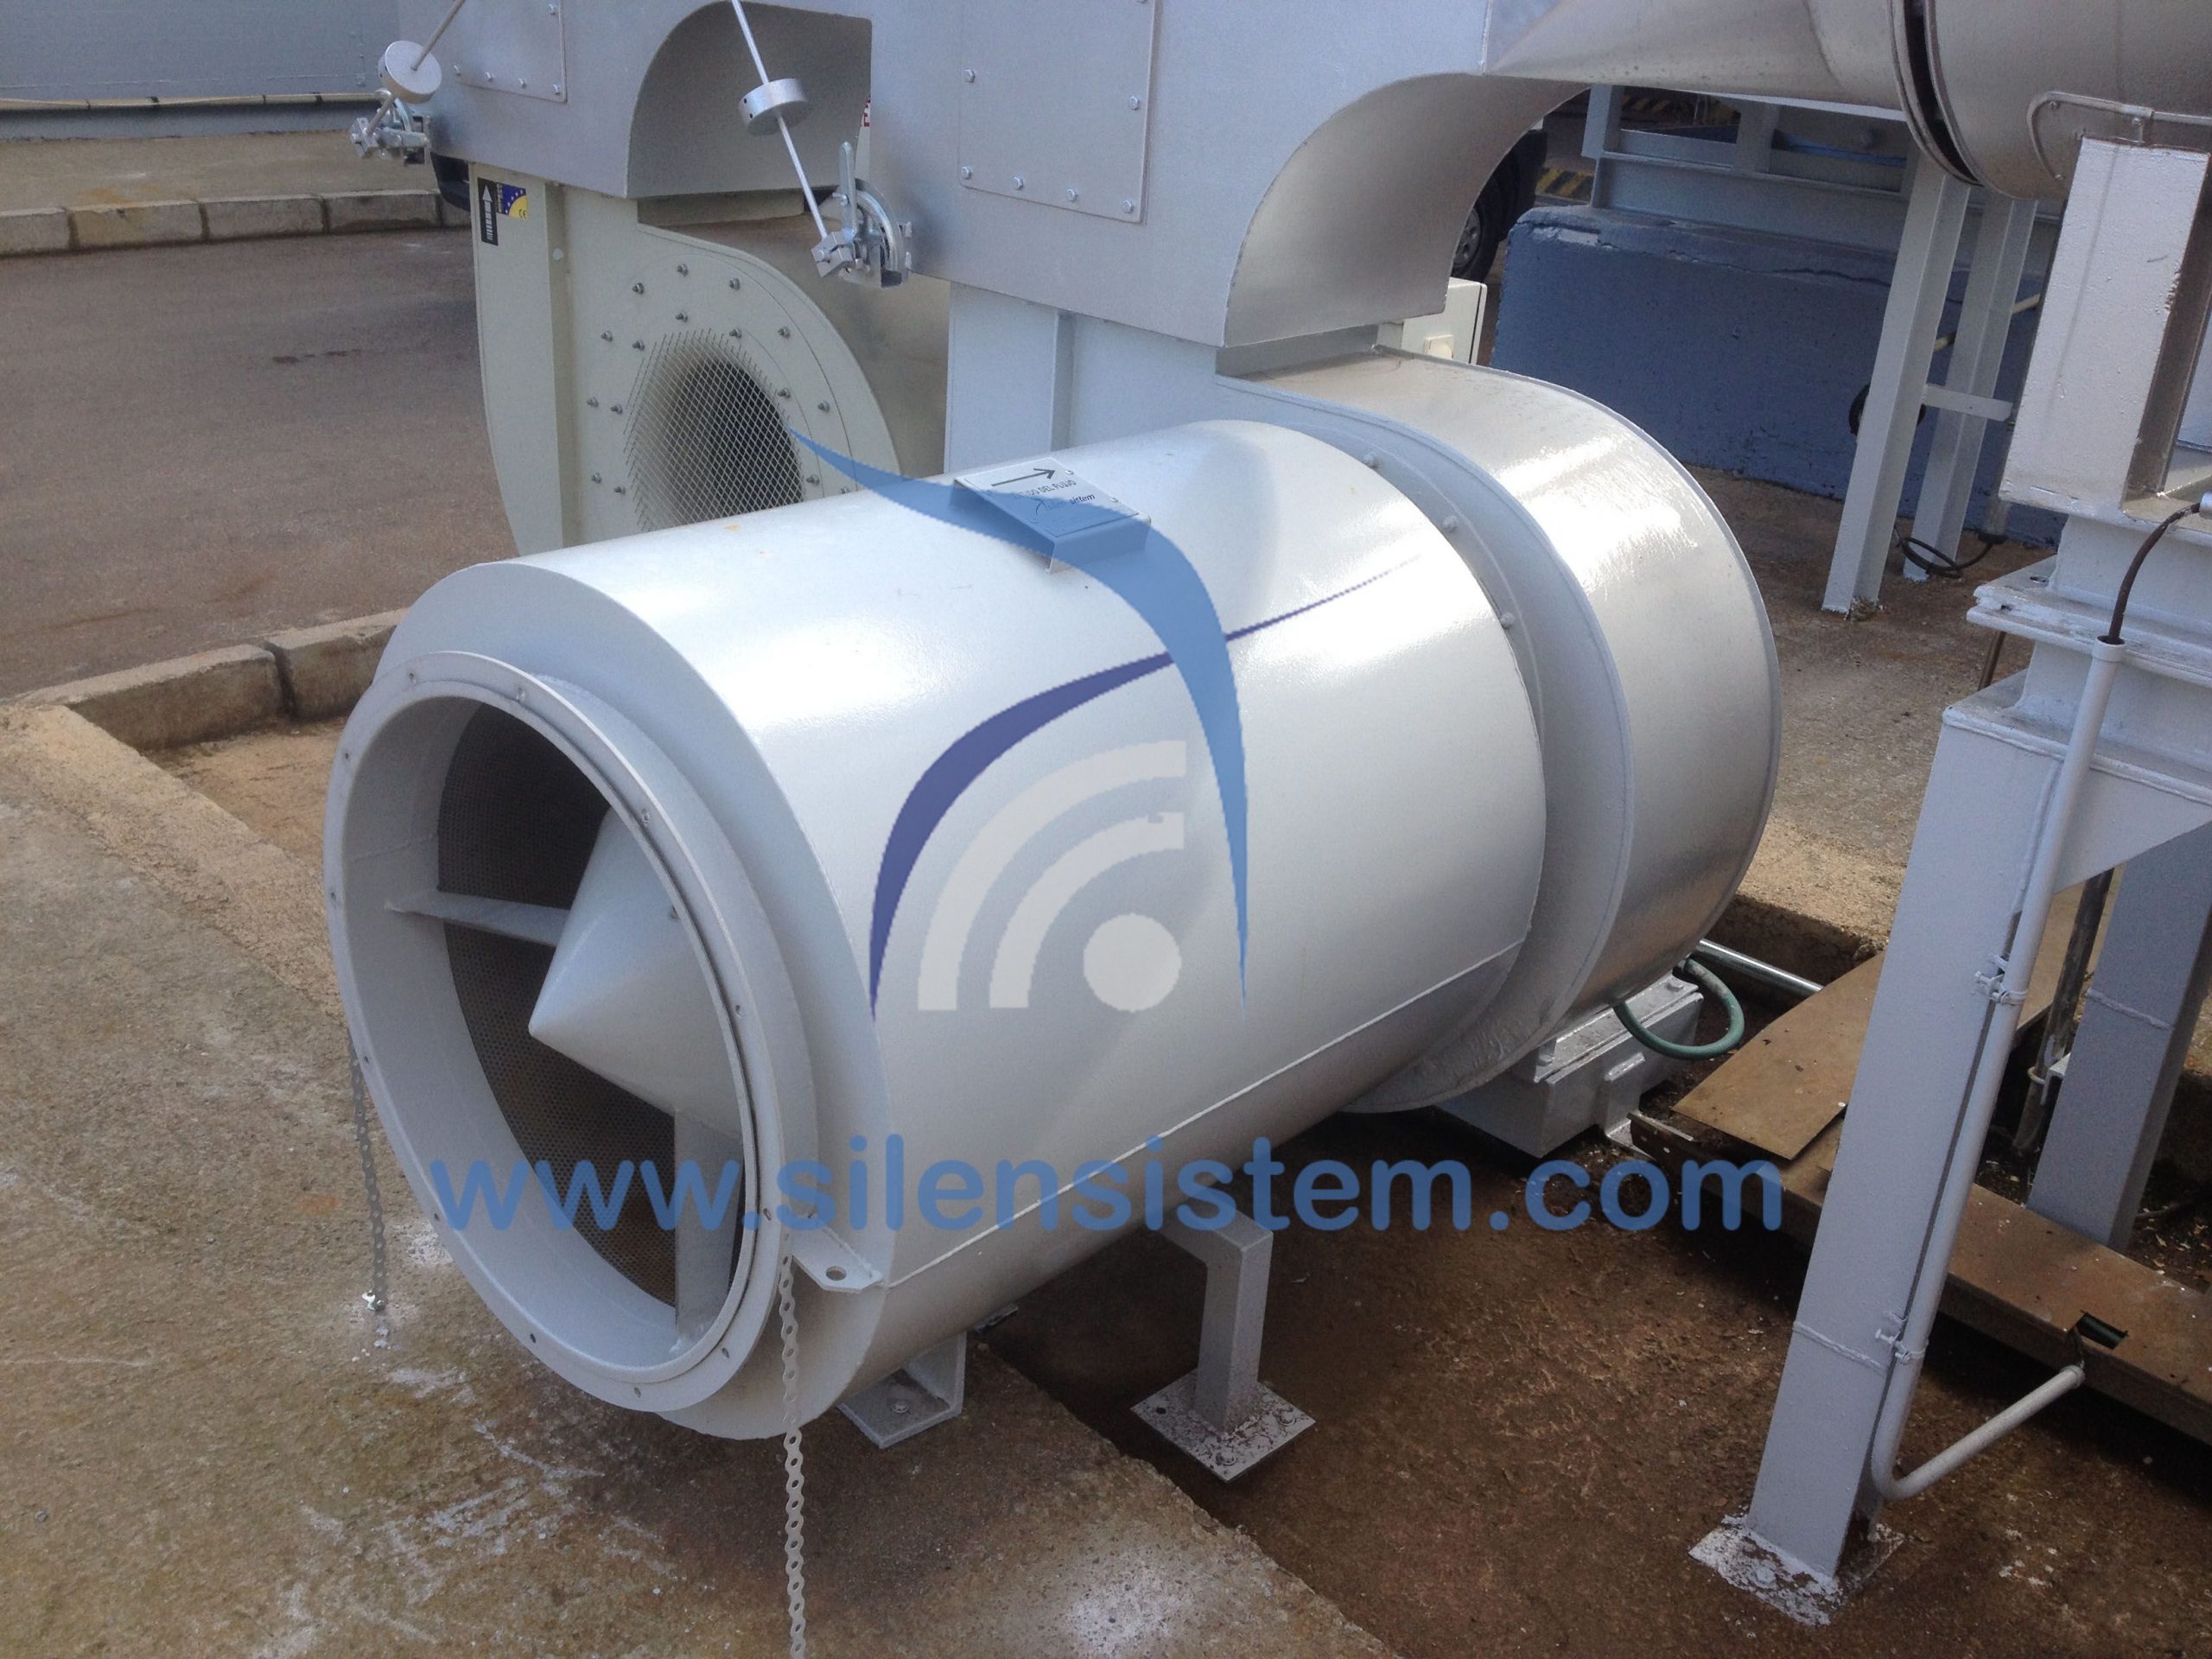 Silenciador de ventilación circular ya instalado en una fábrica industrial. Gran format